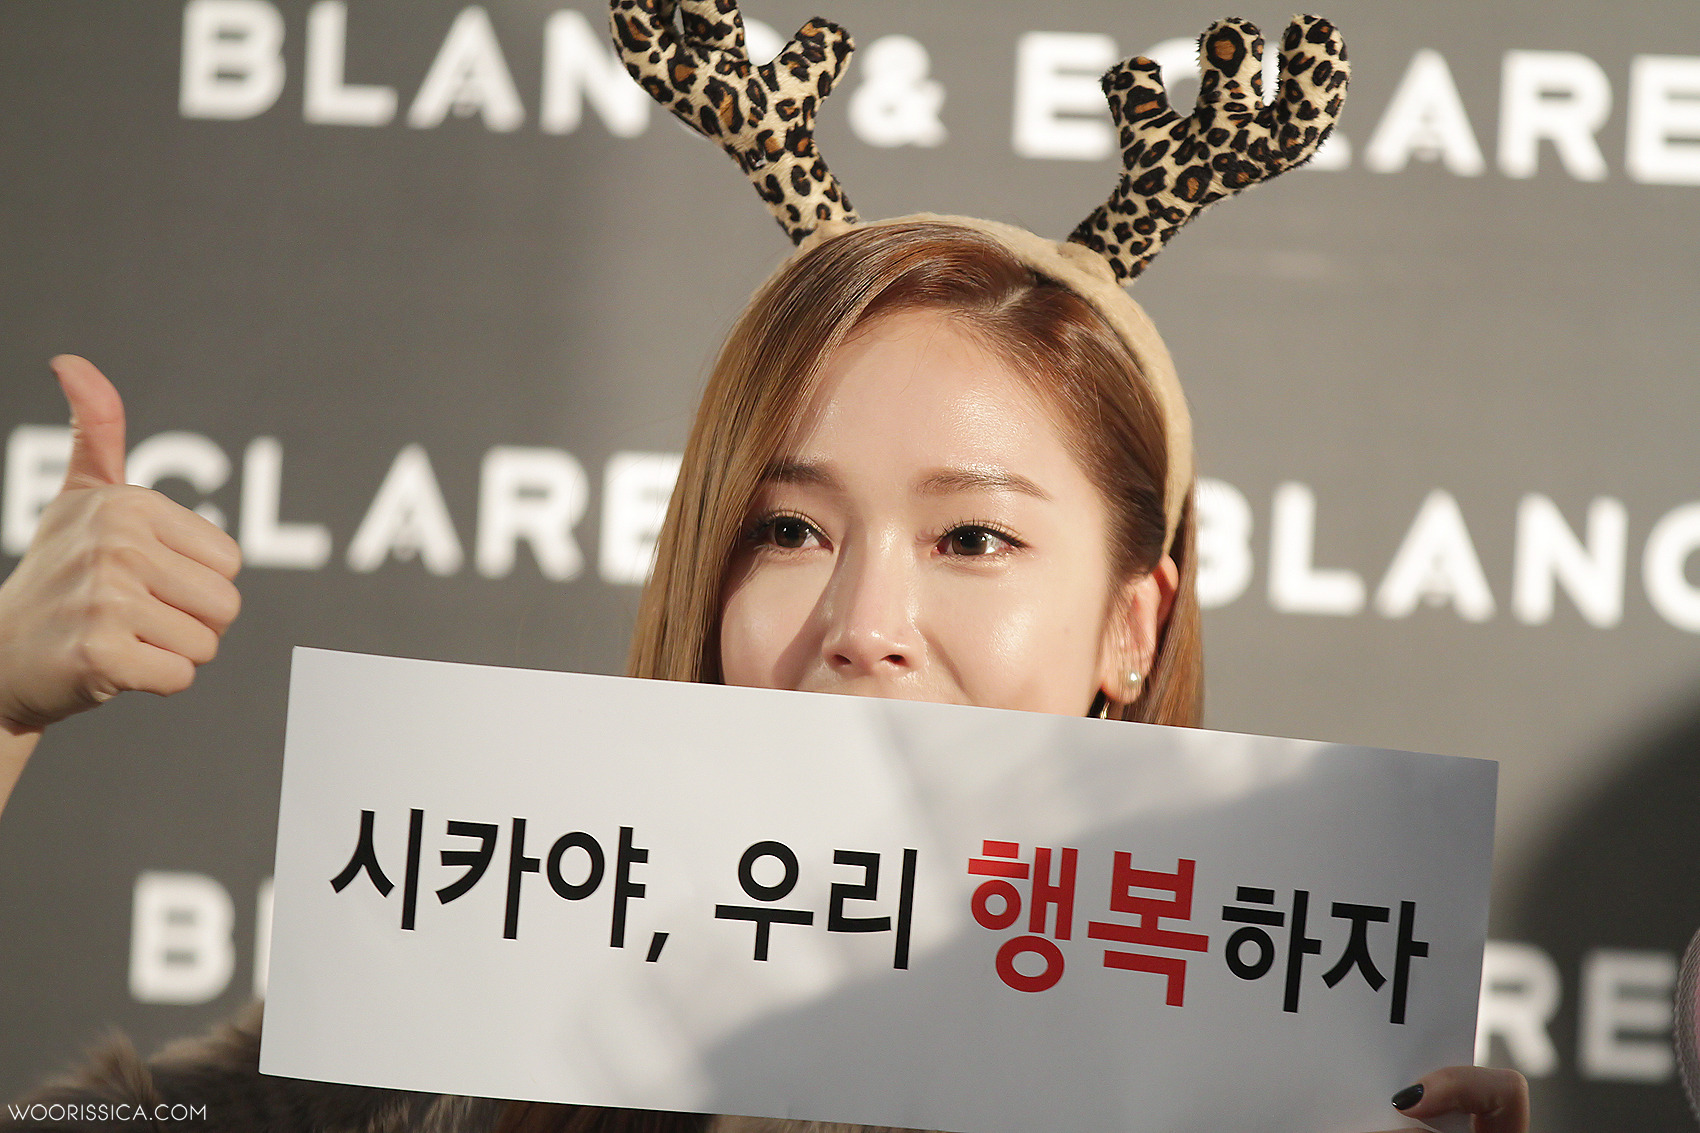 [PIC][22-12-2014]Jessica tham dự buổi fansign cho "BLANC&ECLARE" chi nhánh Seoul, Hàn Quốc vào chiều nay 213E1C3F54992D491A489E